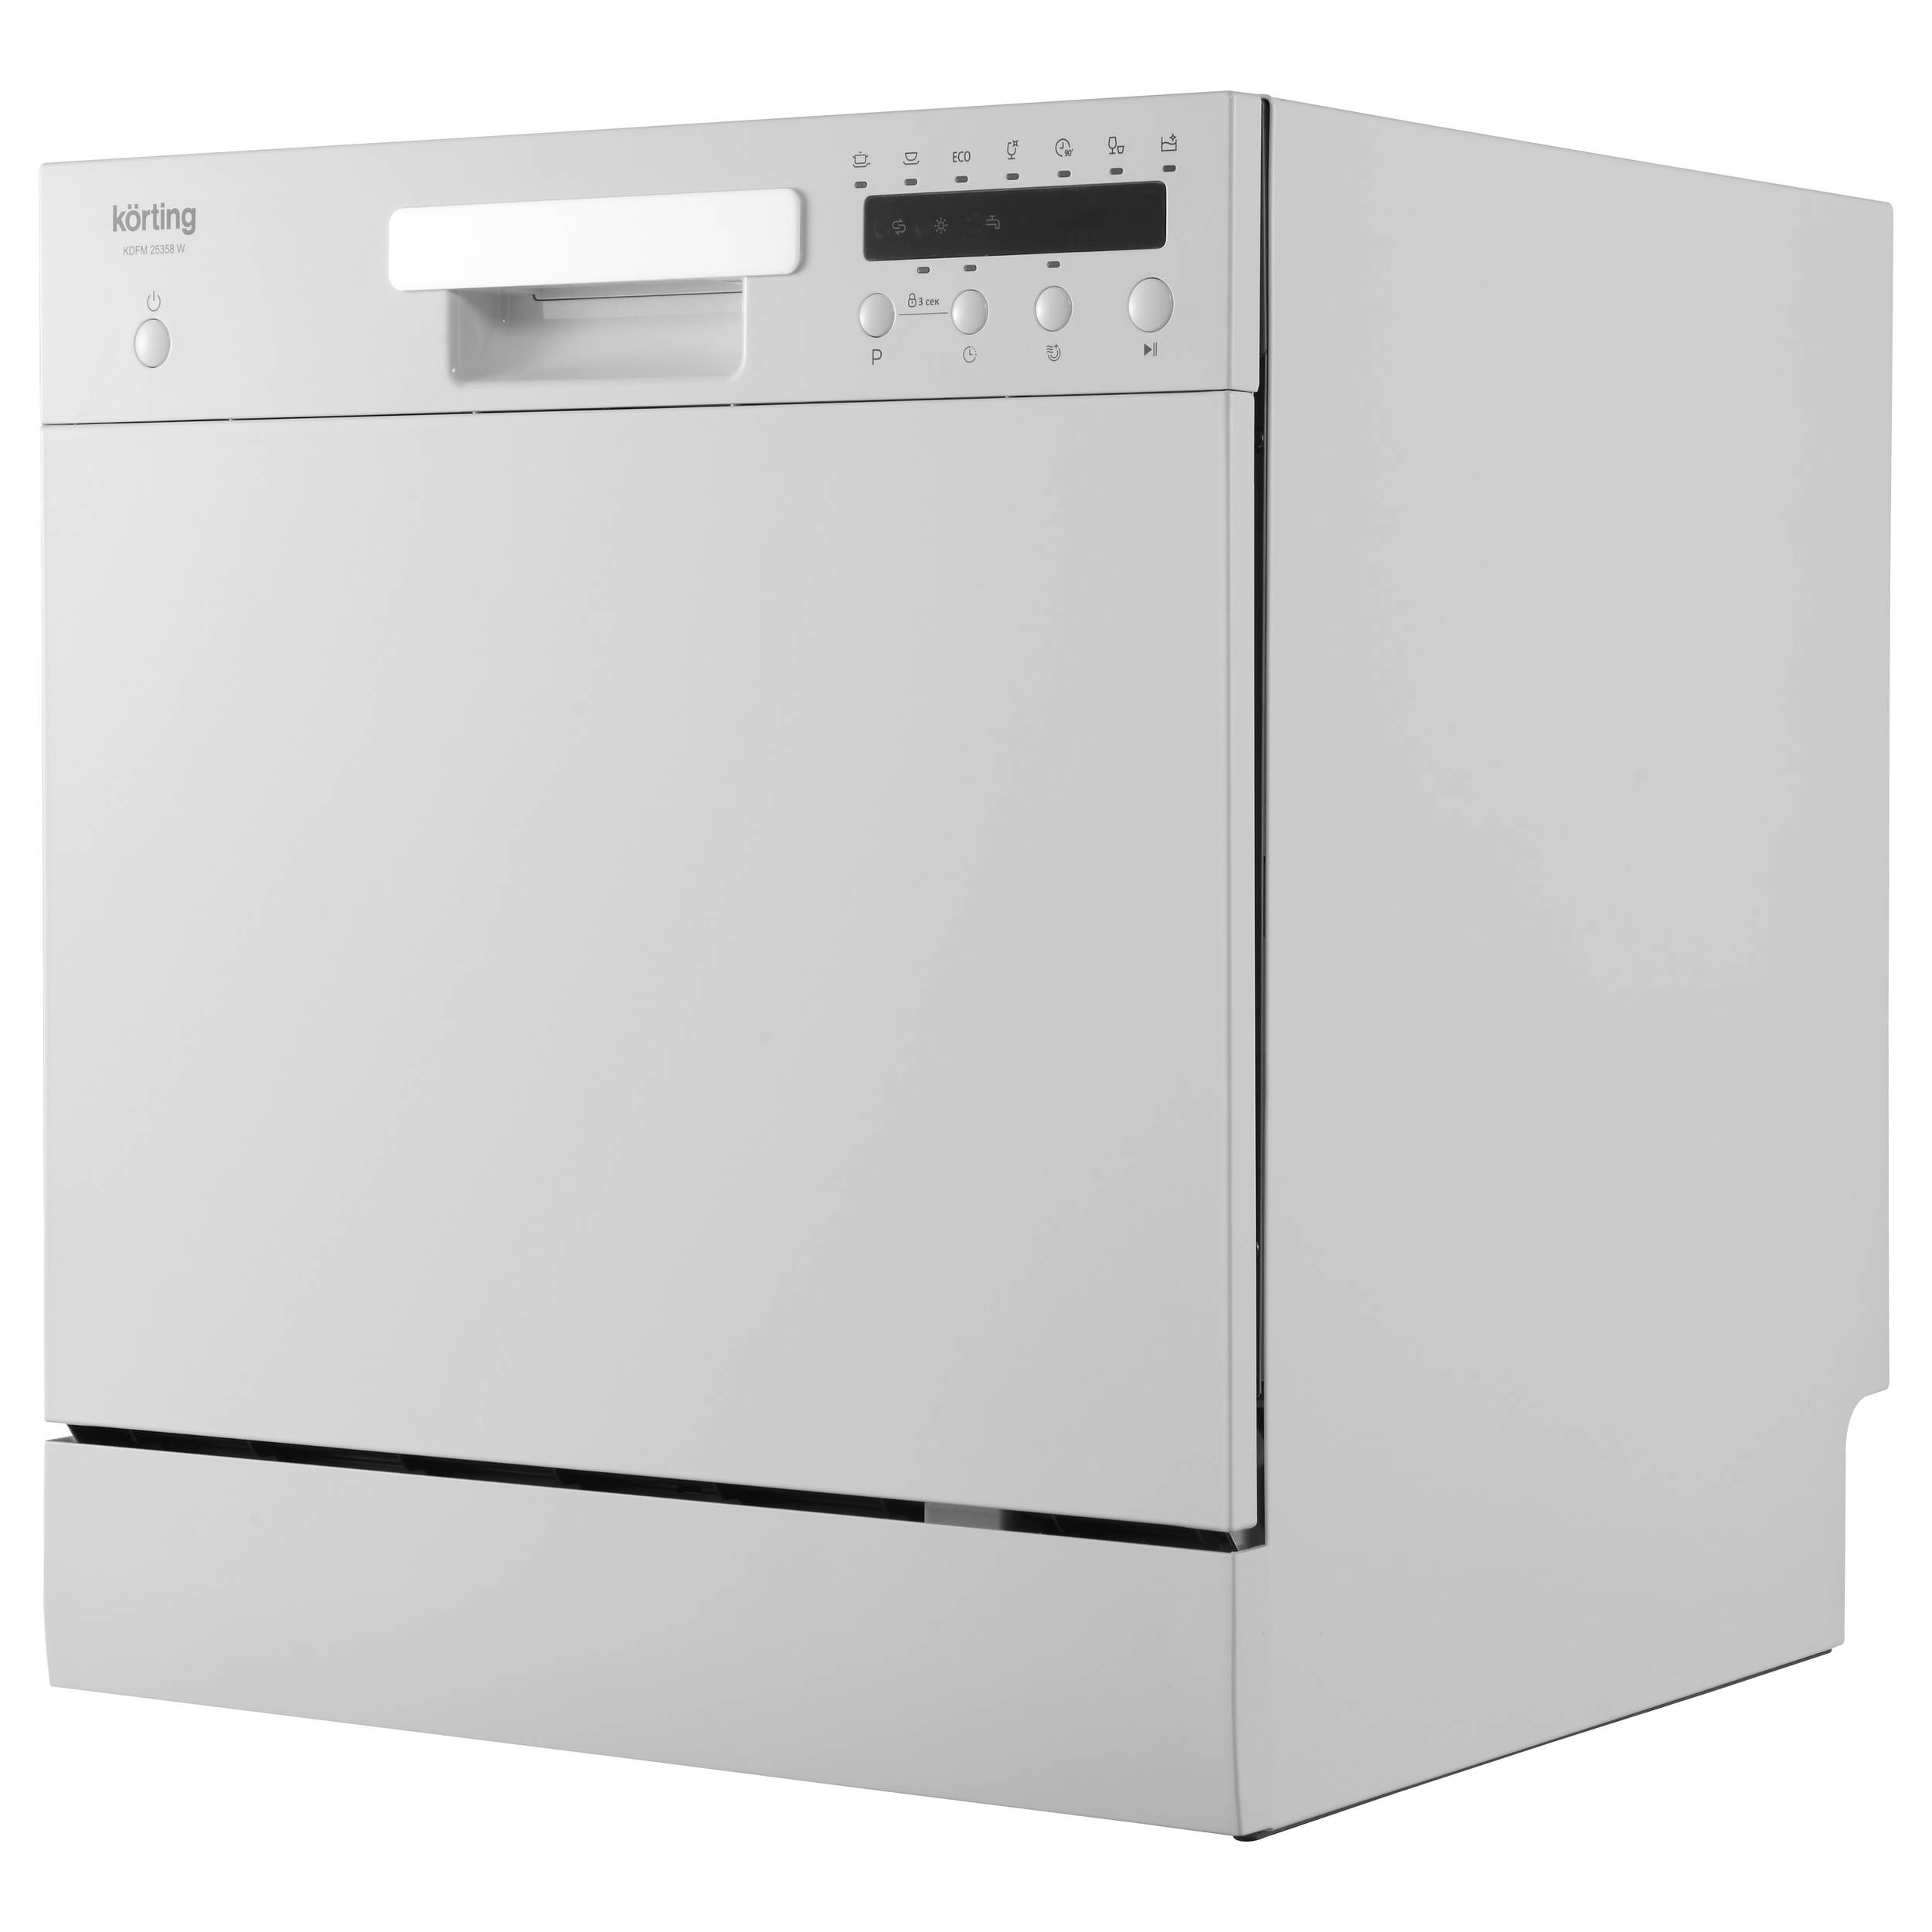 Посудомоечная машина Korting KDFM 25358 W белый посудомоечная машина korting